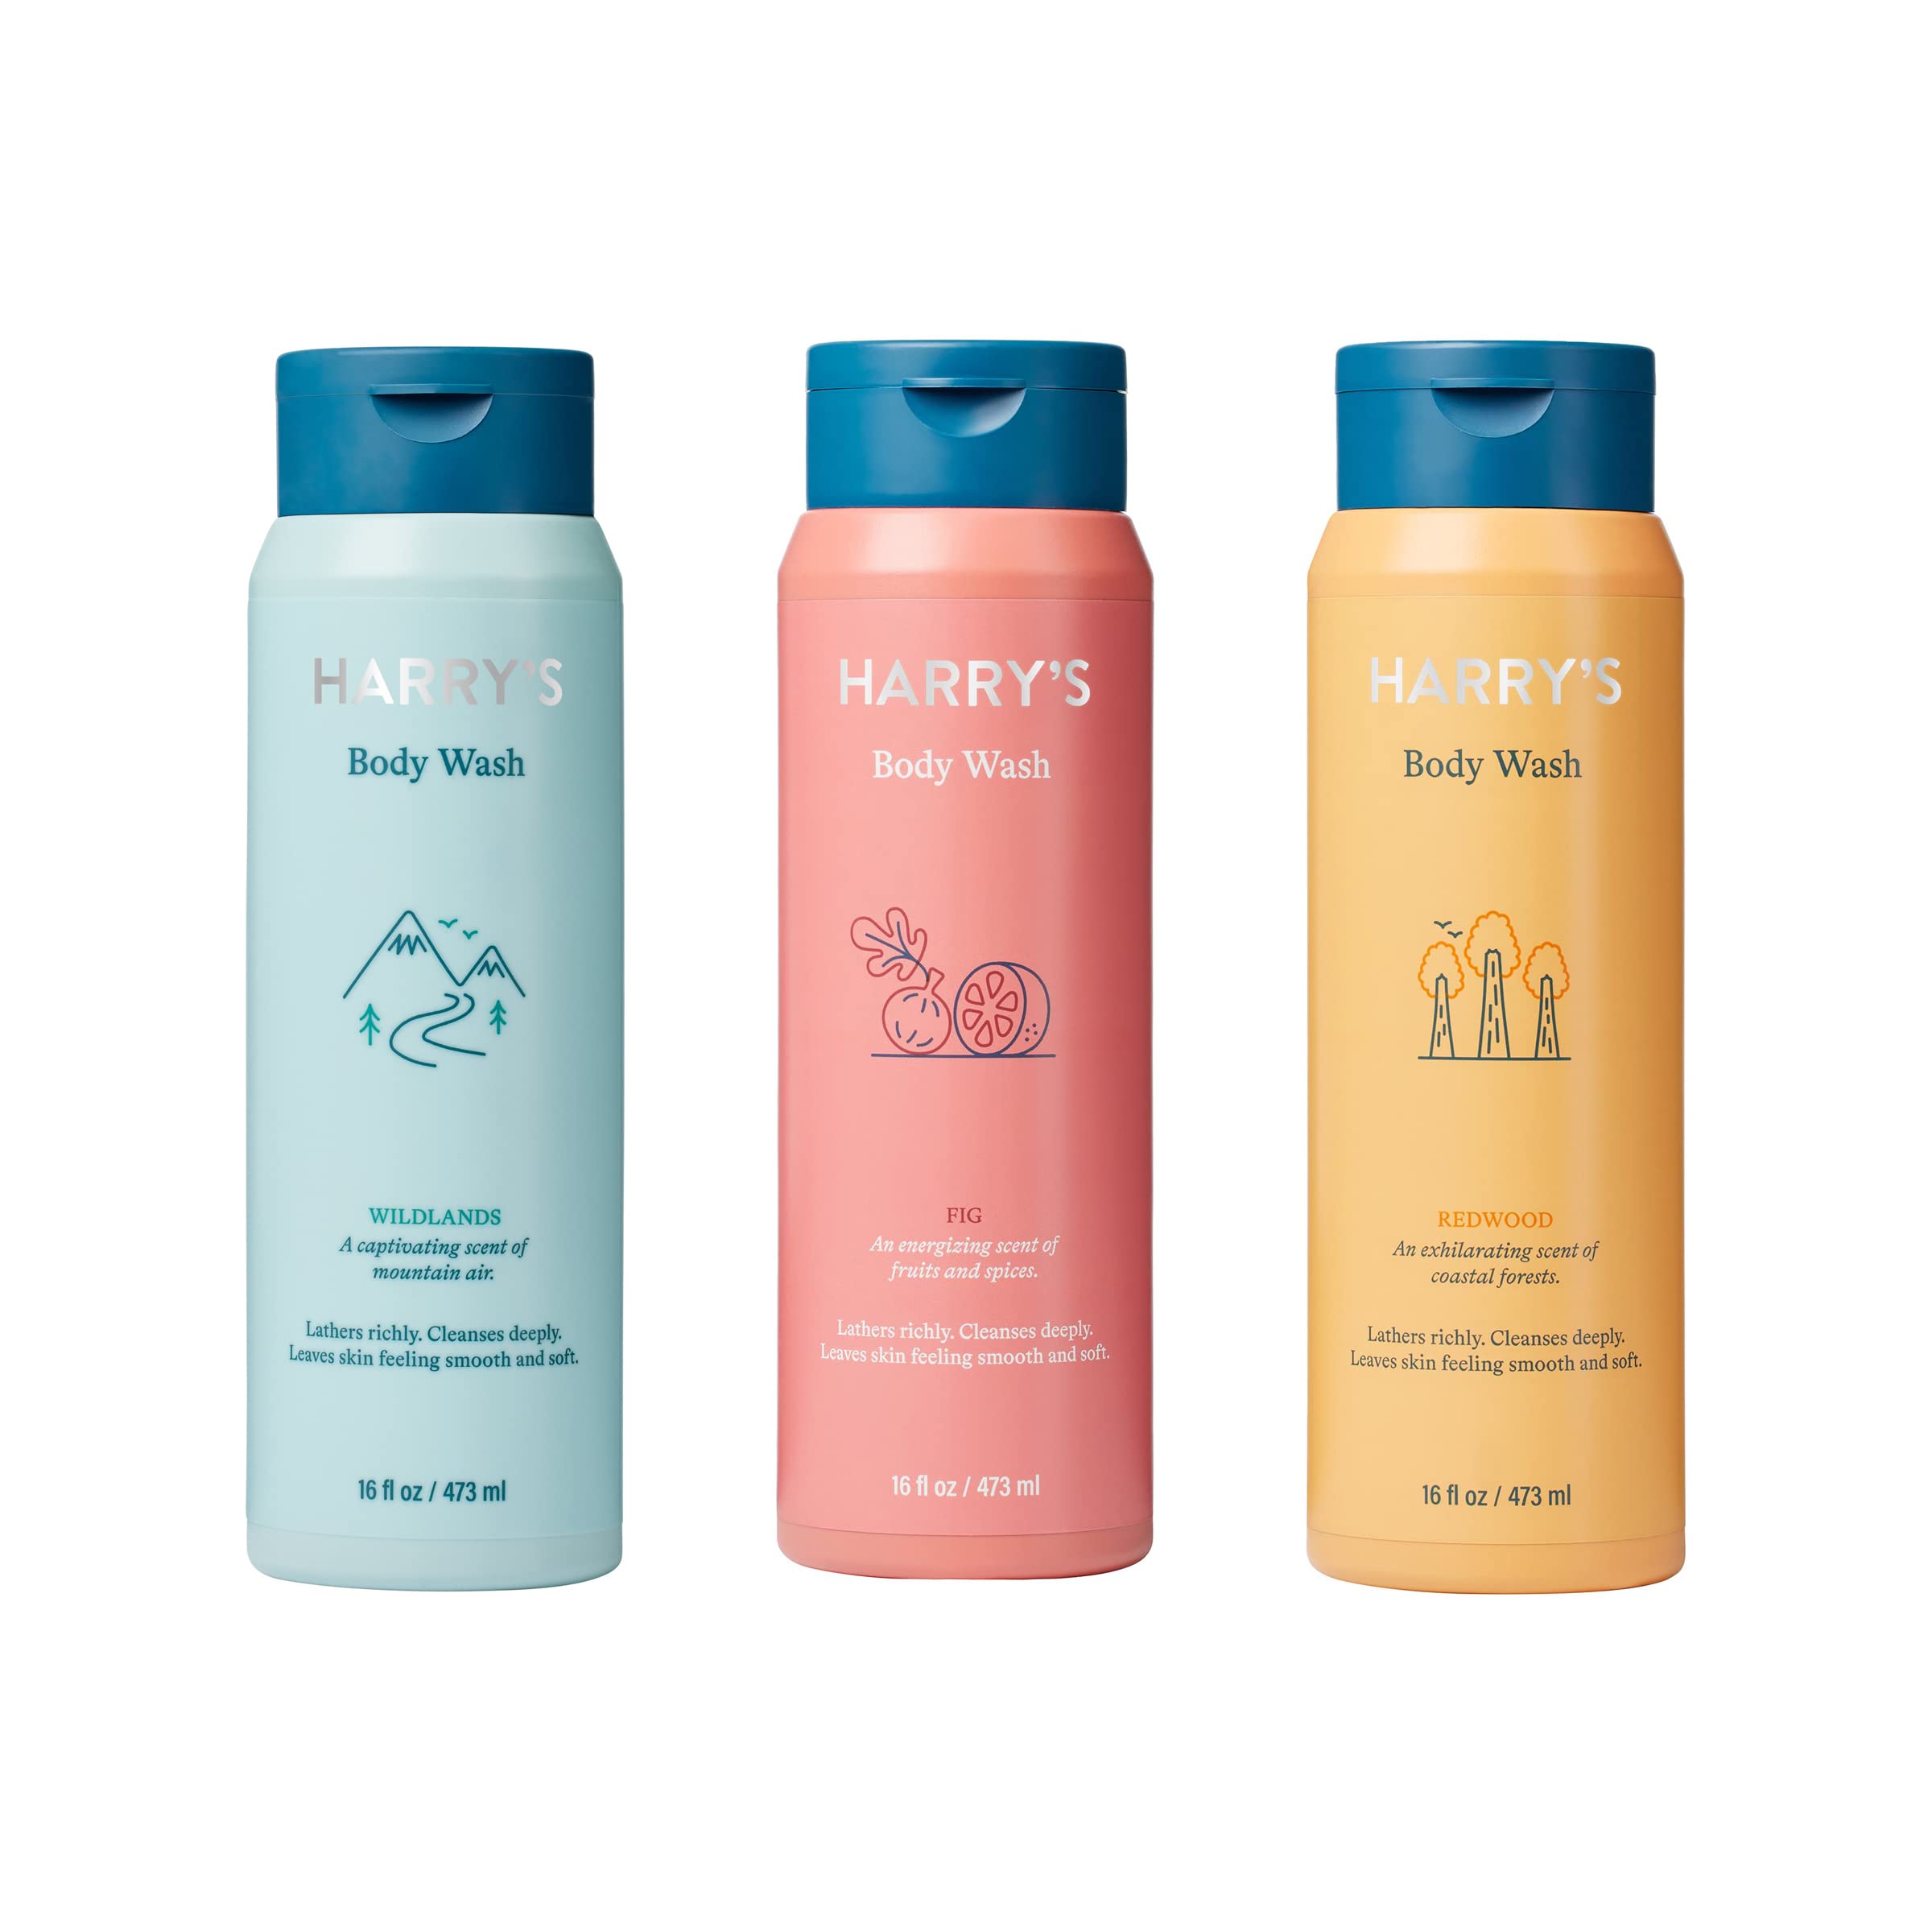 Harry's Men's Body Wash Shower Gel, Variety - Fig, Wildlands, Redwood (Pack of 3)